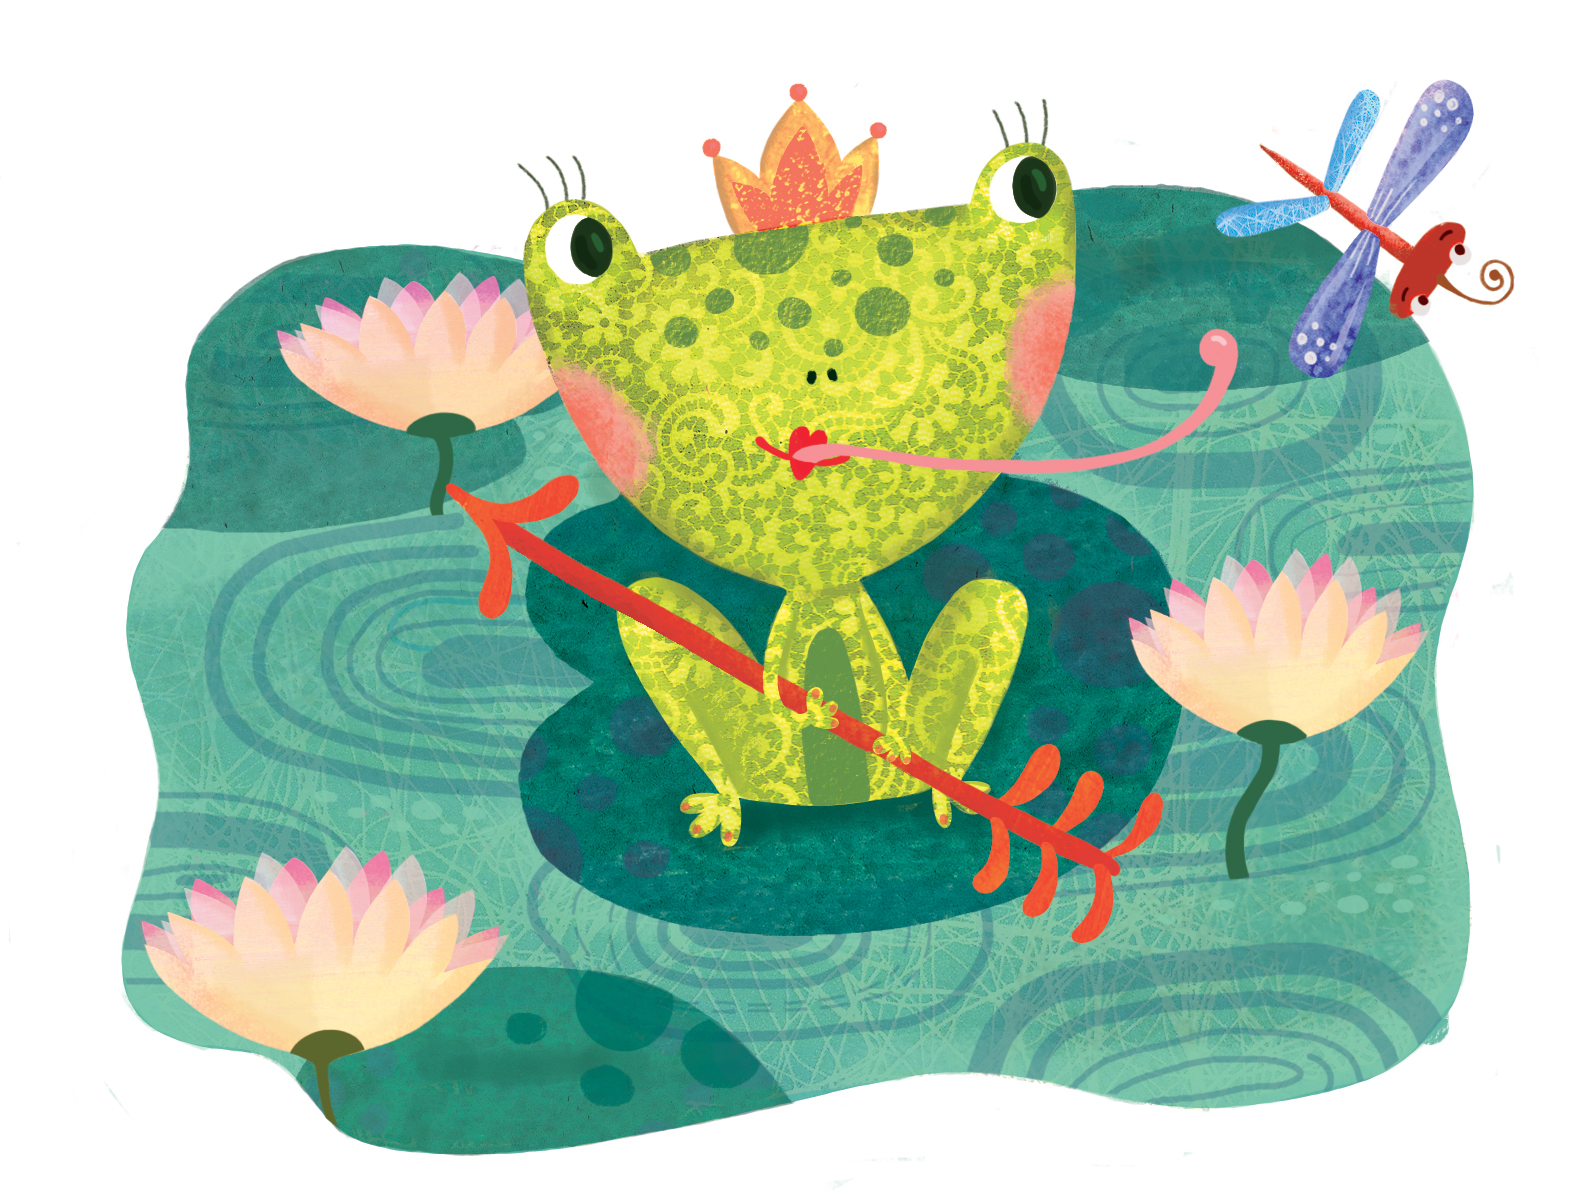 Сказка лягушка. Царевна лягушка. Иллюстраторы царевны лягушки. Иллюстрация по сказке Царевна лягушка. Проект Царевна лягушка.